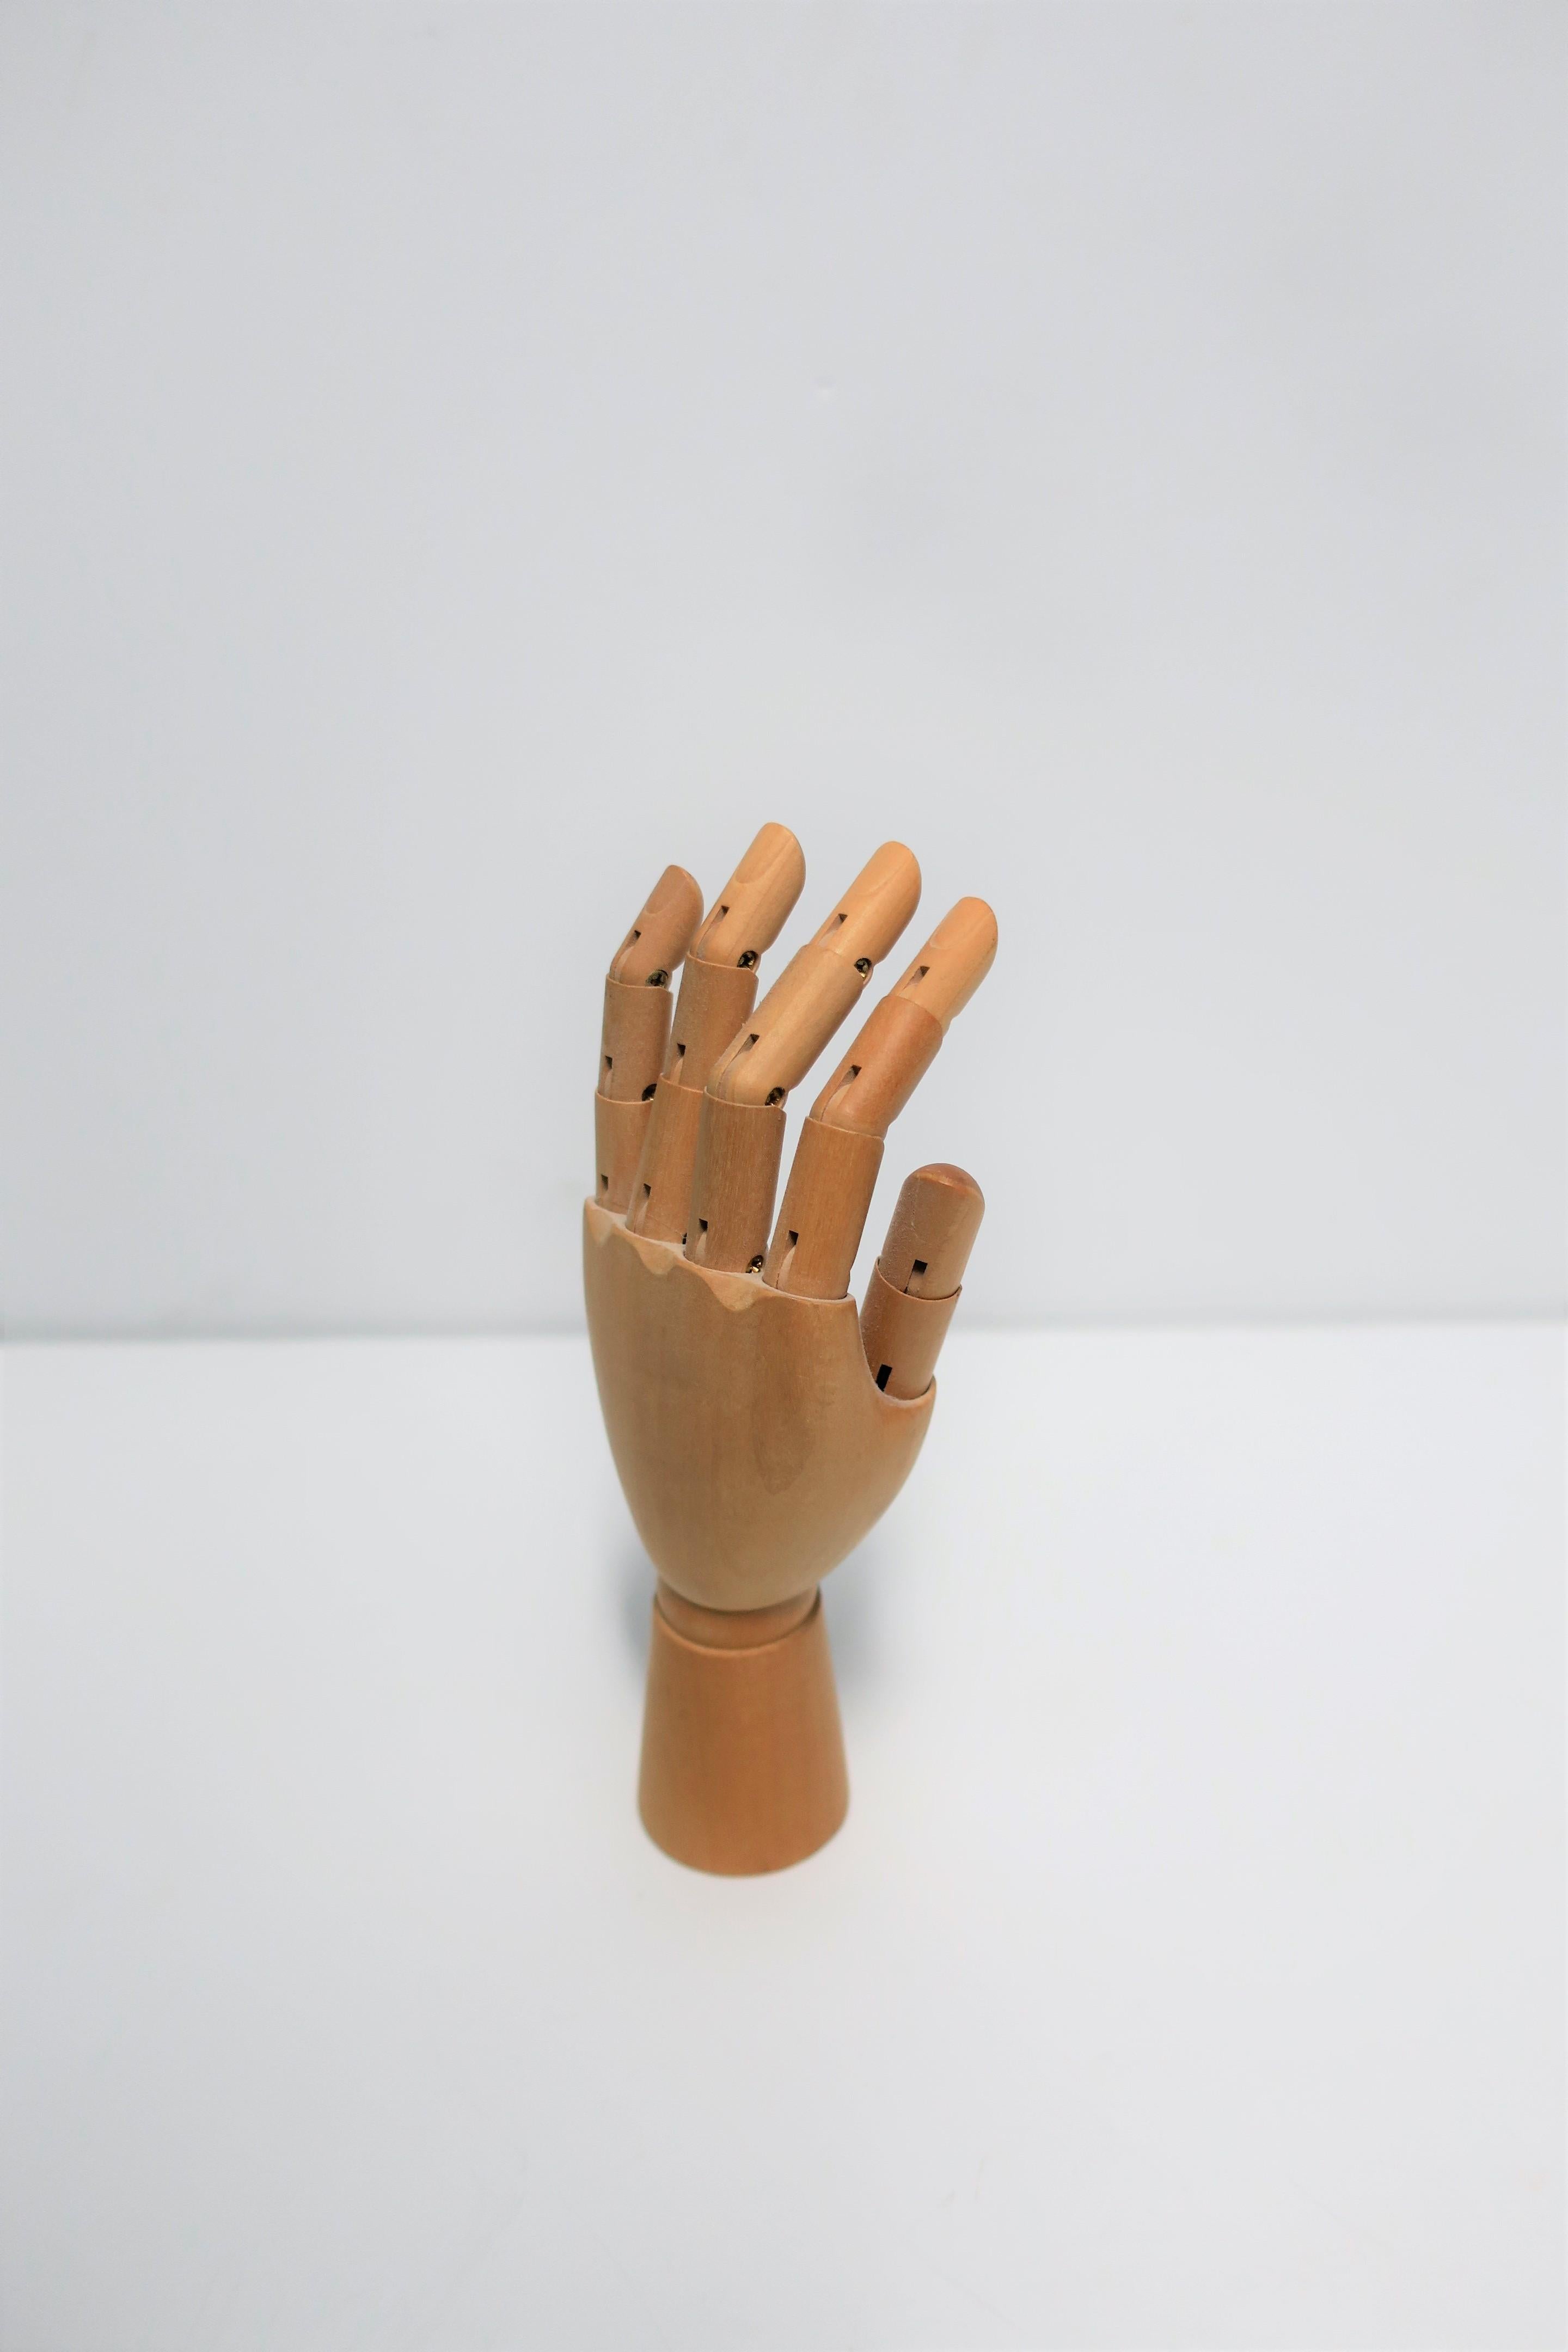 Articulating Wood Hand Sculpture Piece 11